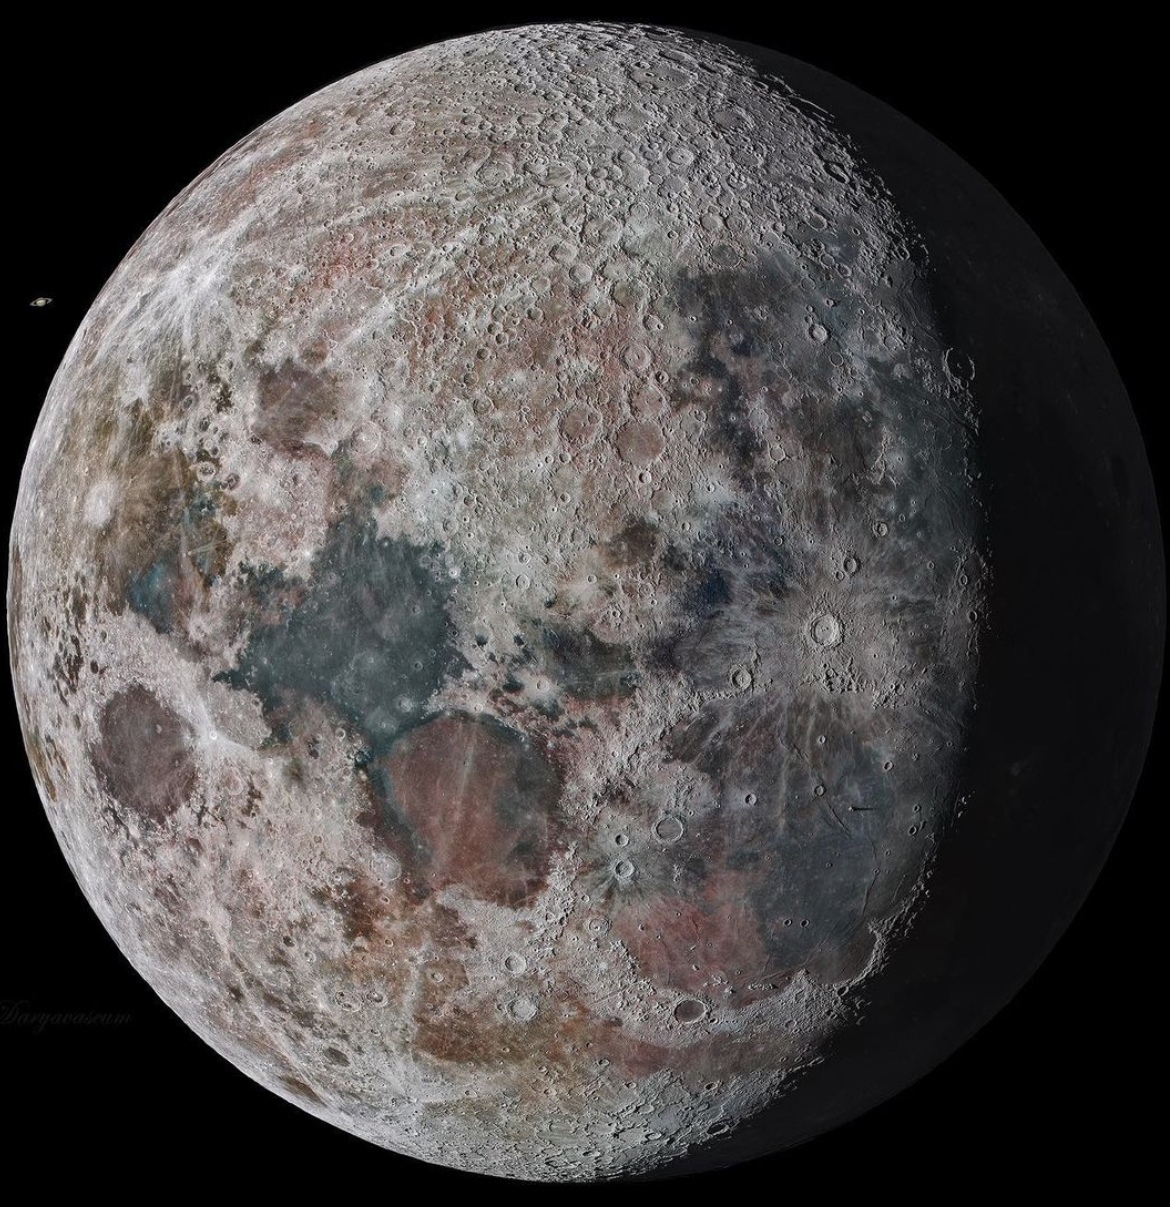 Цветная компиляция снимков Луны астрофотографа Дарьи Кава Мирзы: https://www.instagram.com/p/ClT7OieMS3-/?igshid=NTdlMDg3MTY=